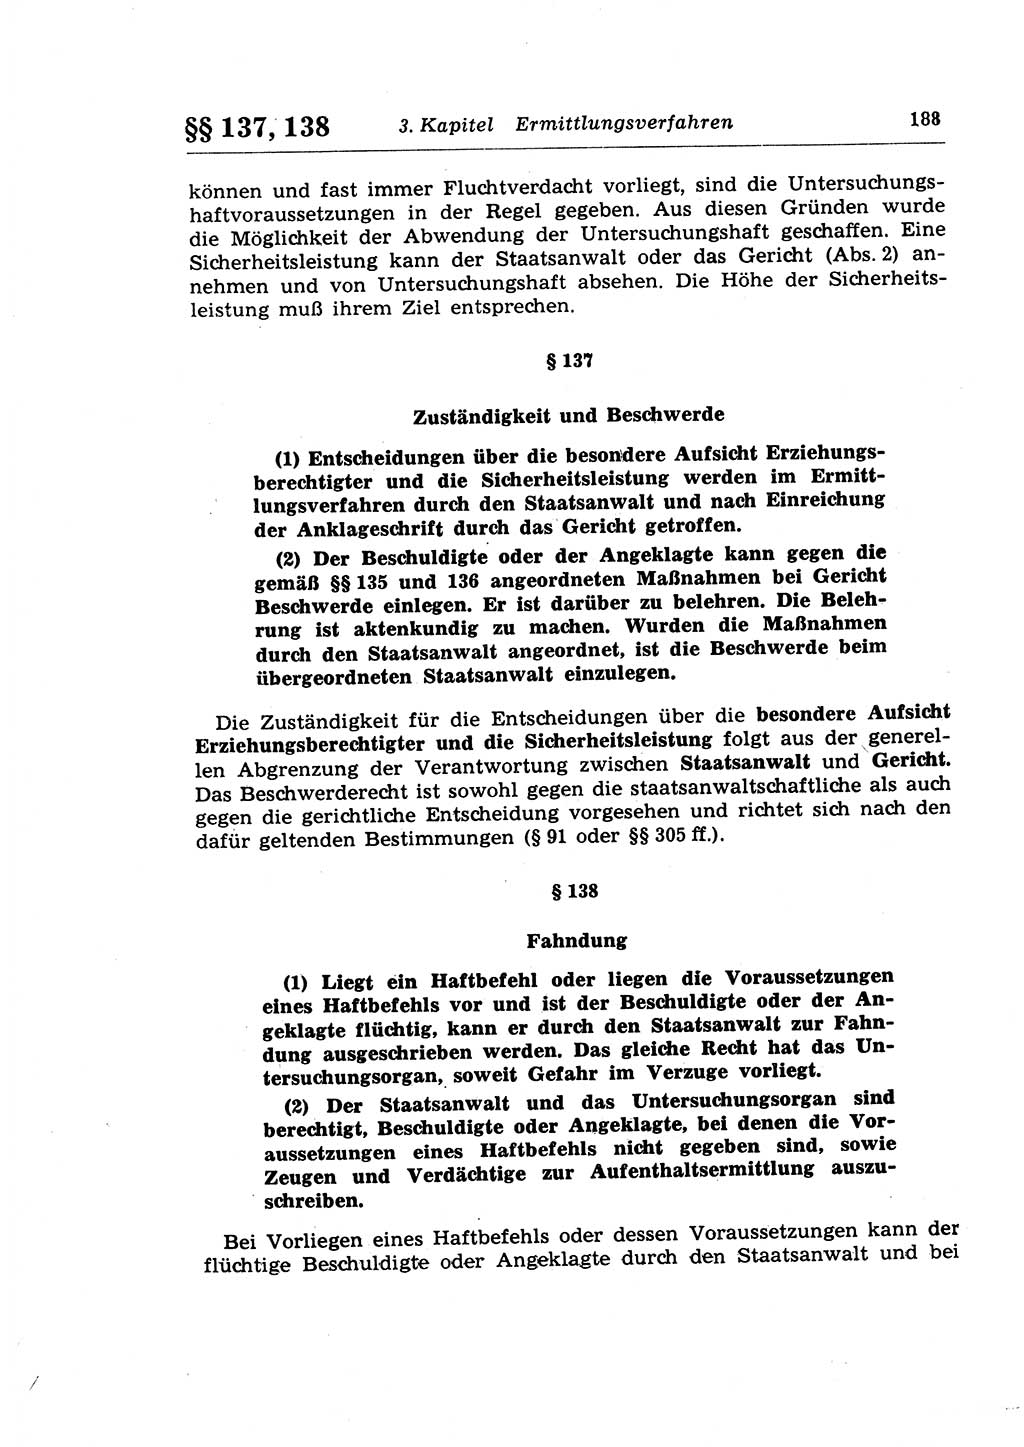 Strafprozeßrecht der DDR (Deutsche Demokratische Republik), Lehrkommentar zur Strafprozeßordnung (StPO) 1968, Seite 188 (Strafprozeßr. DDR Lehrkomm. StPO 19688, S. 188)